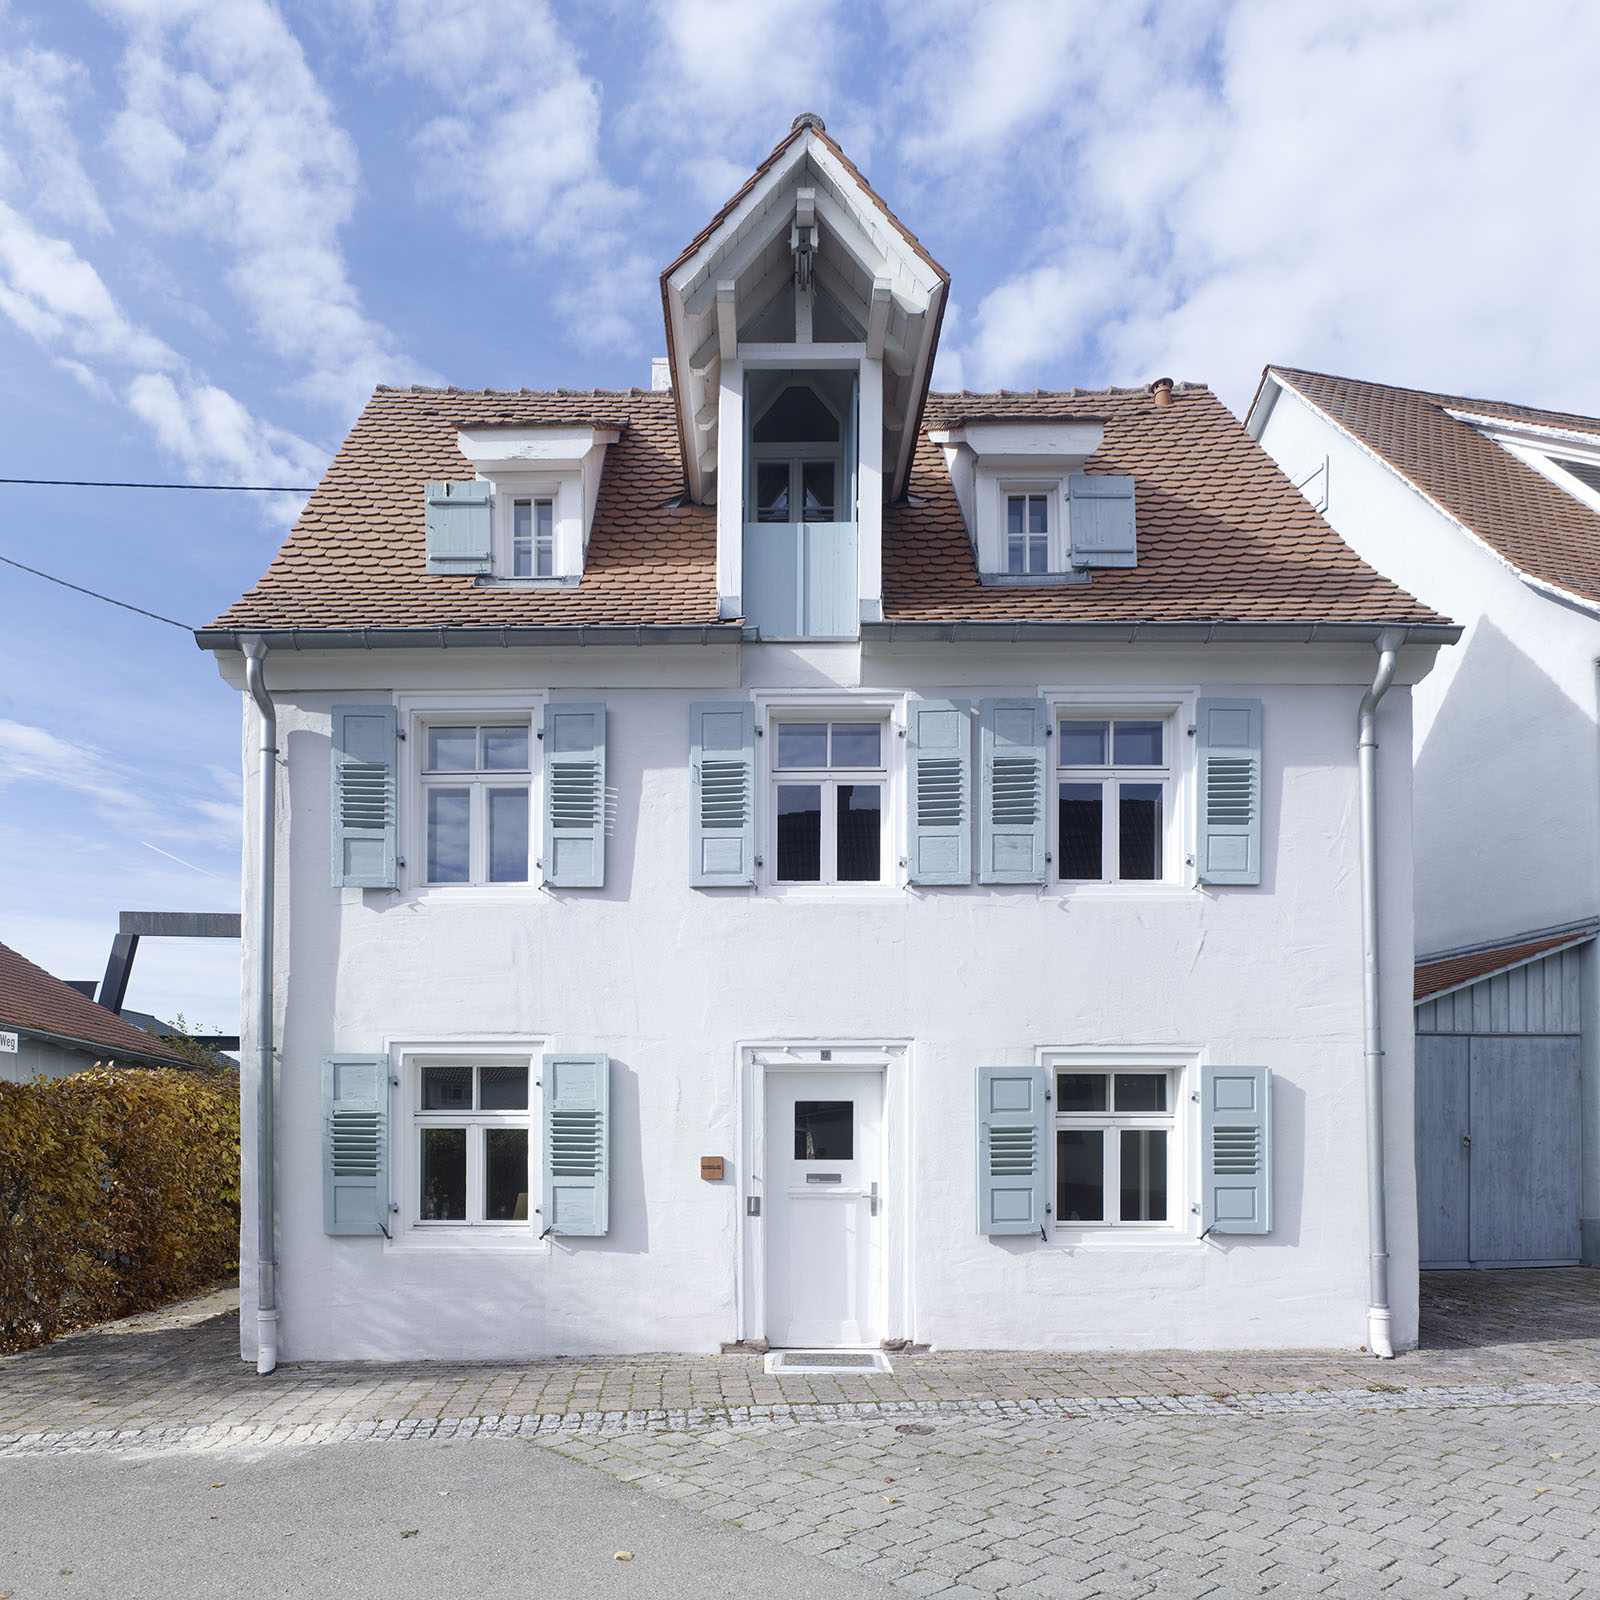 Haus U. von Markus Uhrig Architektur aufgenommen in Geisingen 2015 Bild 1